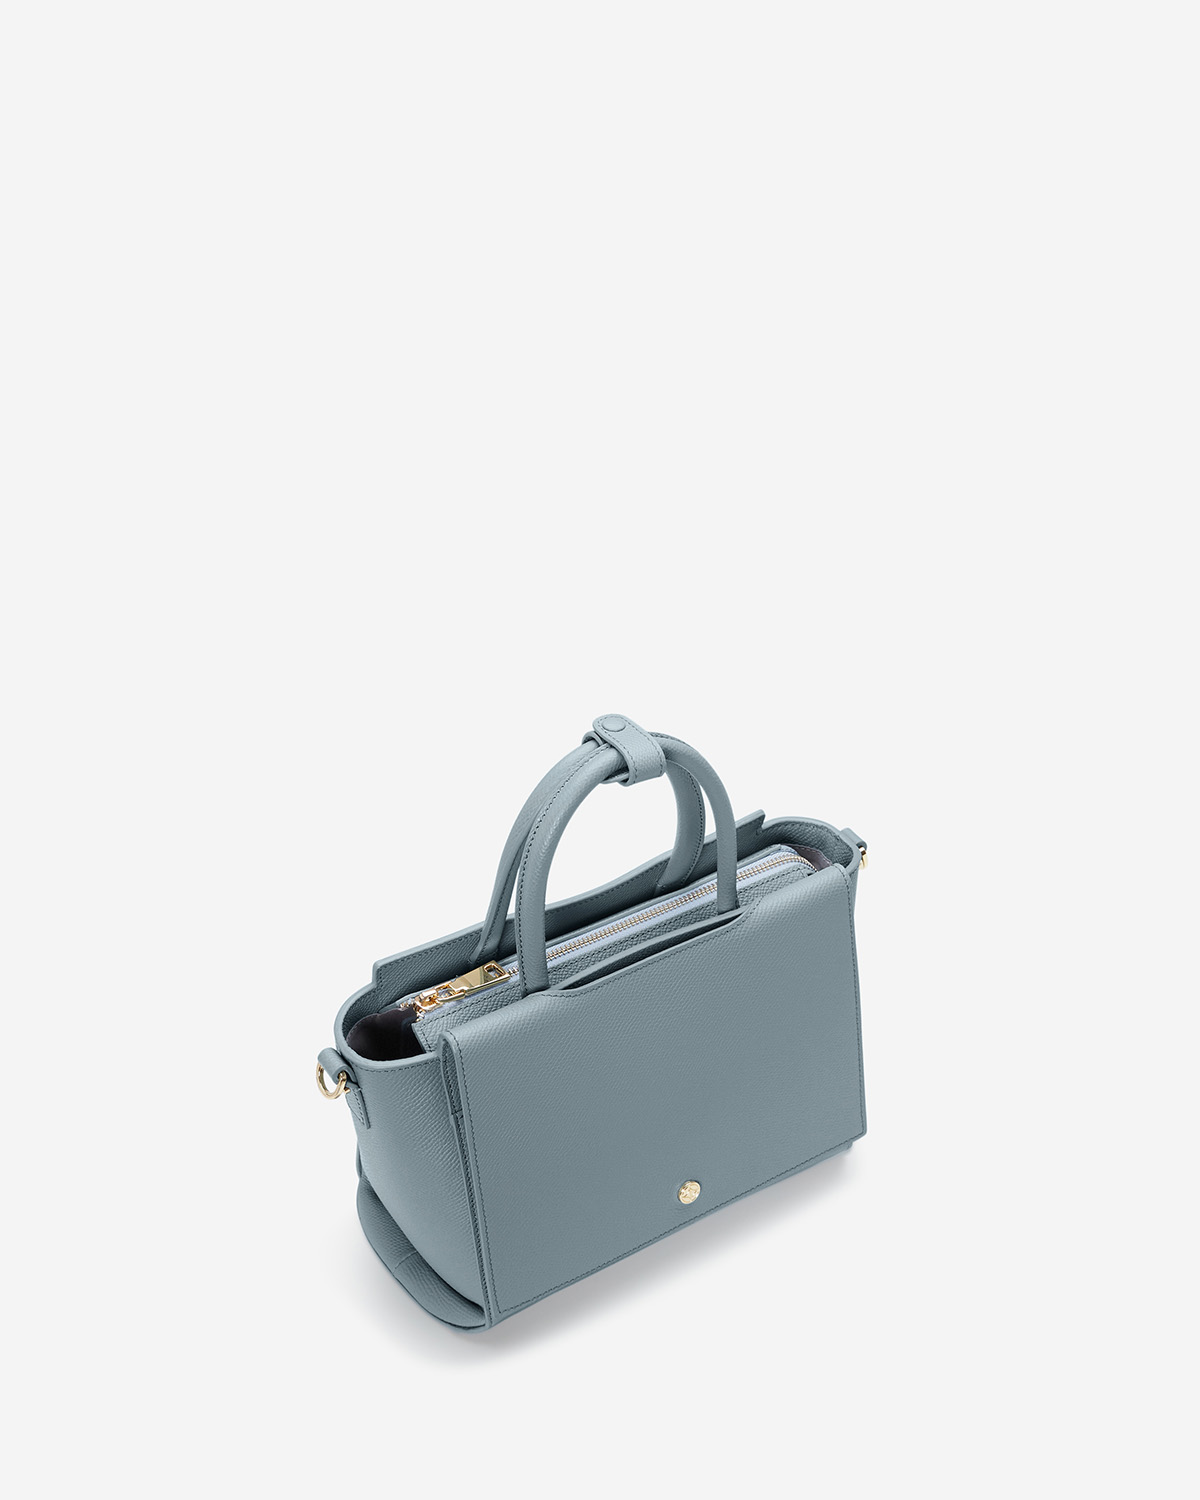 กระเป๋าถือหนังแท้ VERA Heidi Leather Handbag, ไซส์ 25 สี Cloud